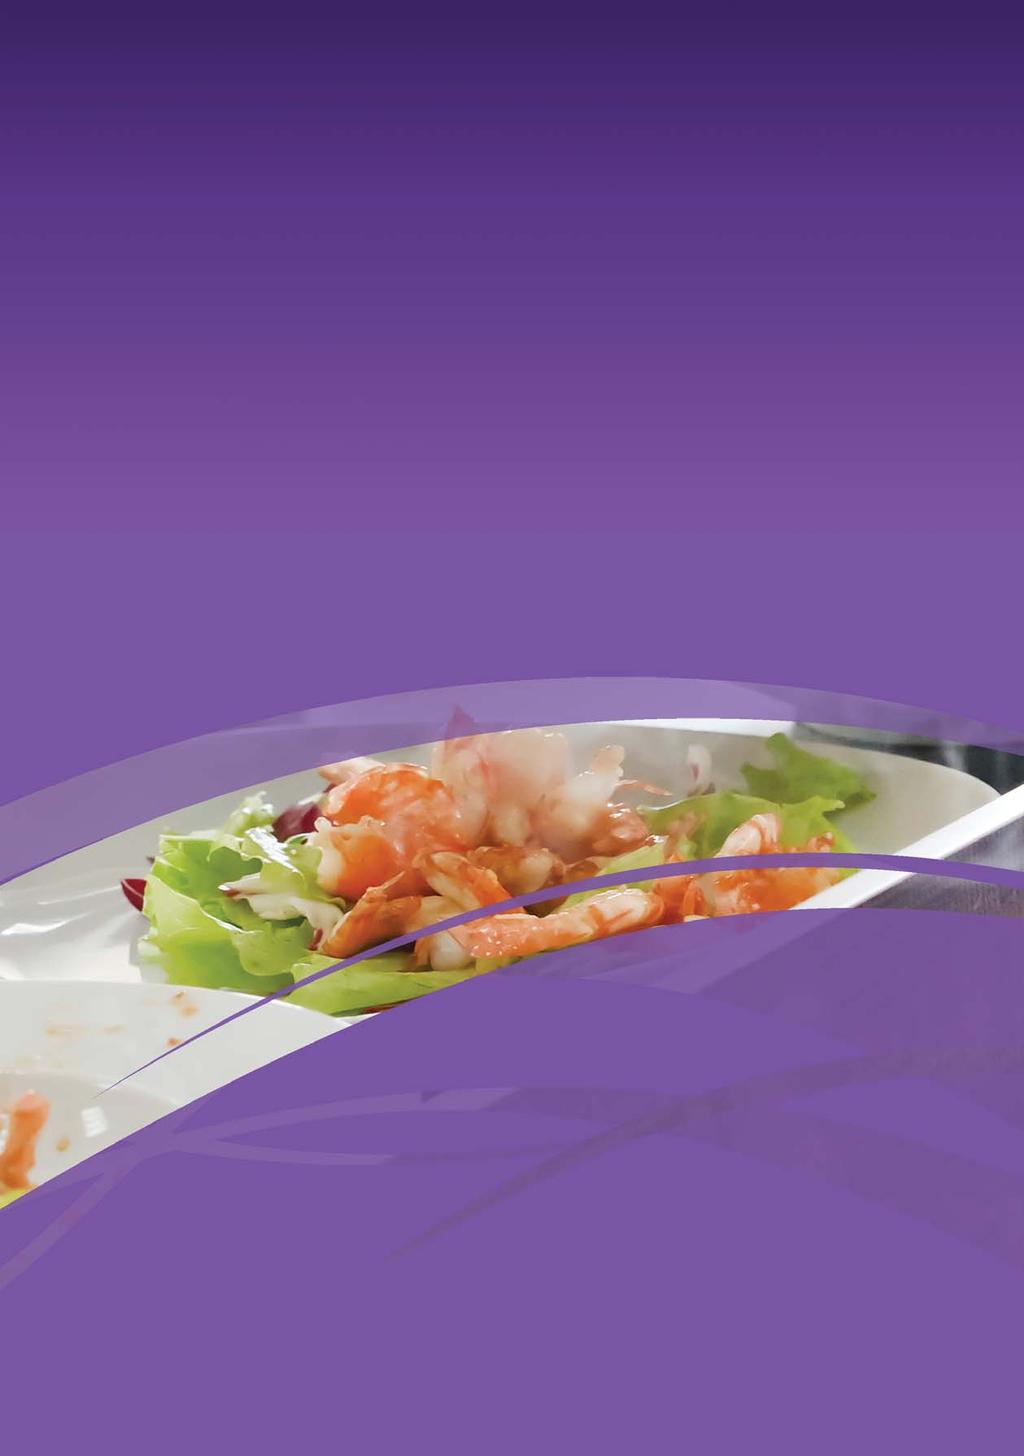 Porkkas skåp i Future-serien för användning i professionella kök och matberedningsområden,